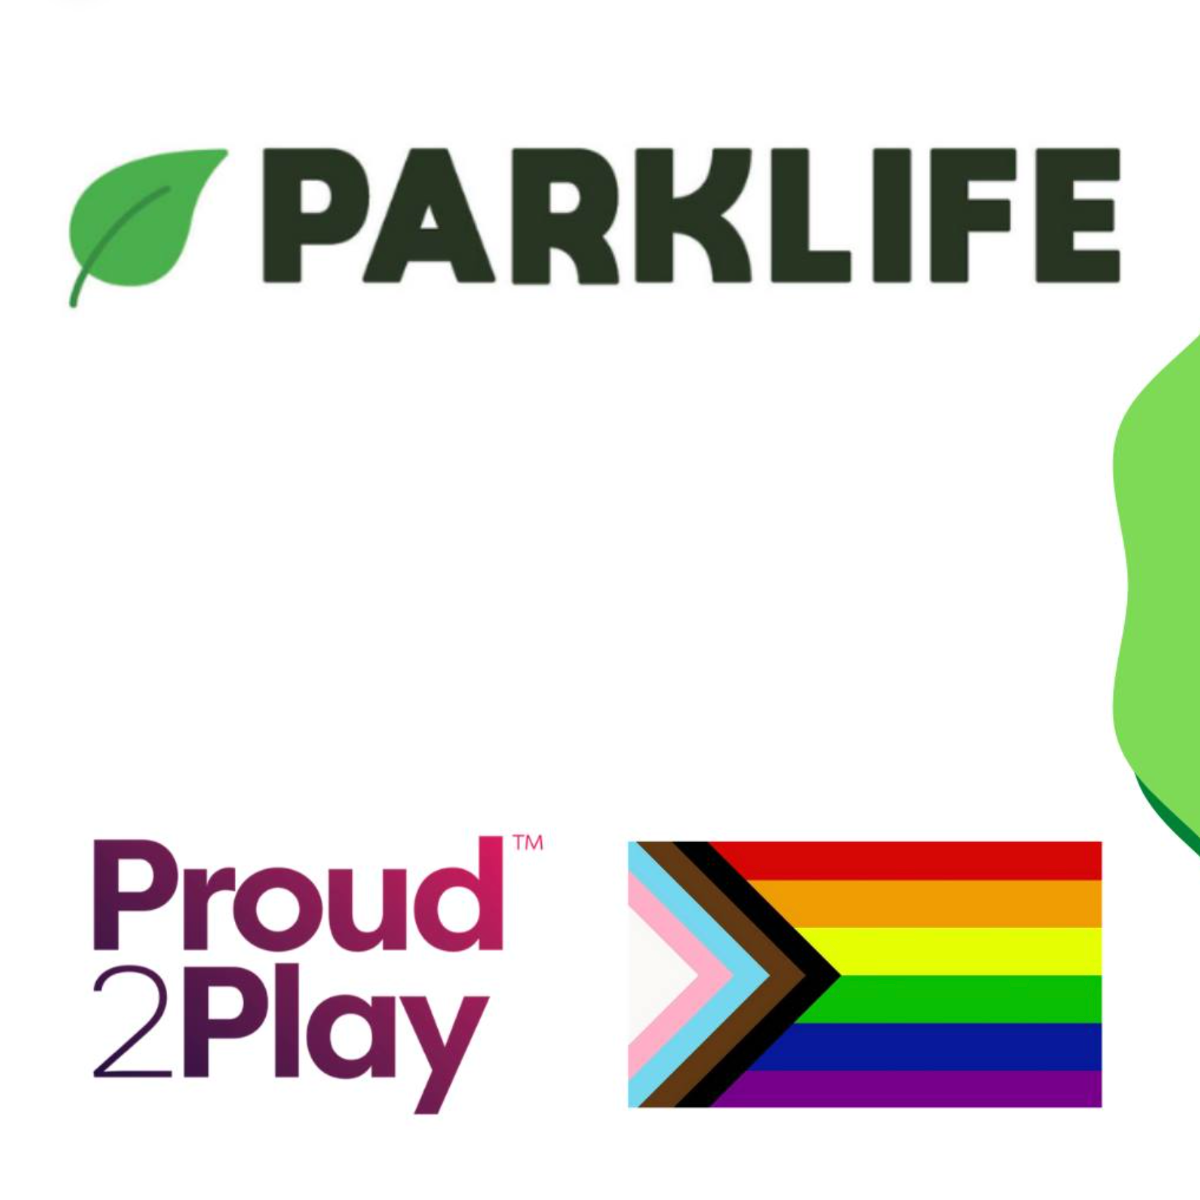 Parklife logo with pride flag